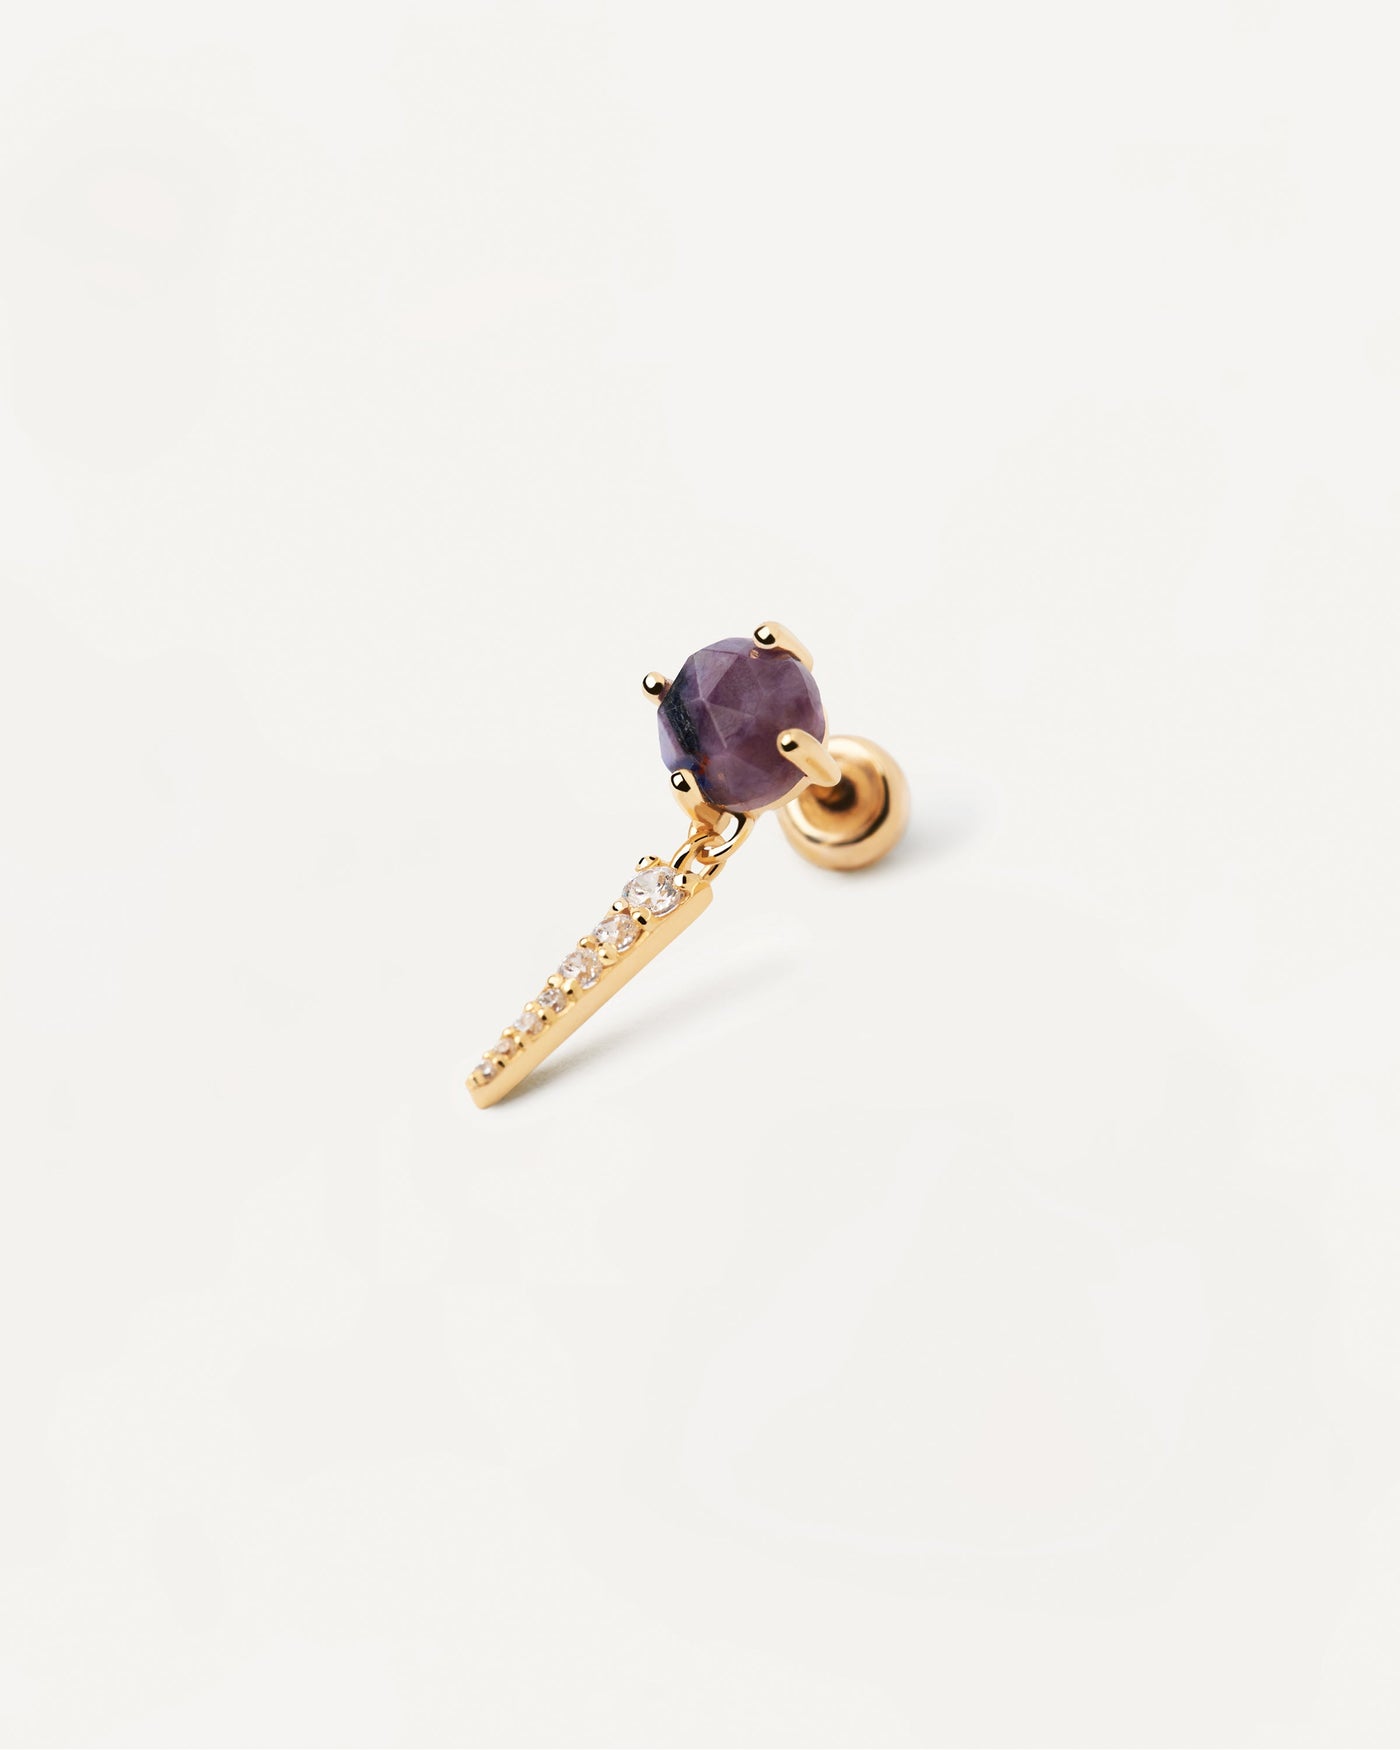 Yoki Charoit Einzelner Ohrring. Vergoldeter Piercing-Ohrring mit violettem Edelstein und weißem Zirkonia-Anhänger. Erhalten Sie die neuesten Produkte von PDPAOLA. Geben Sie Ihre Bestellung sicher auf und erhalten Sie diesen Bestseller.